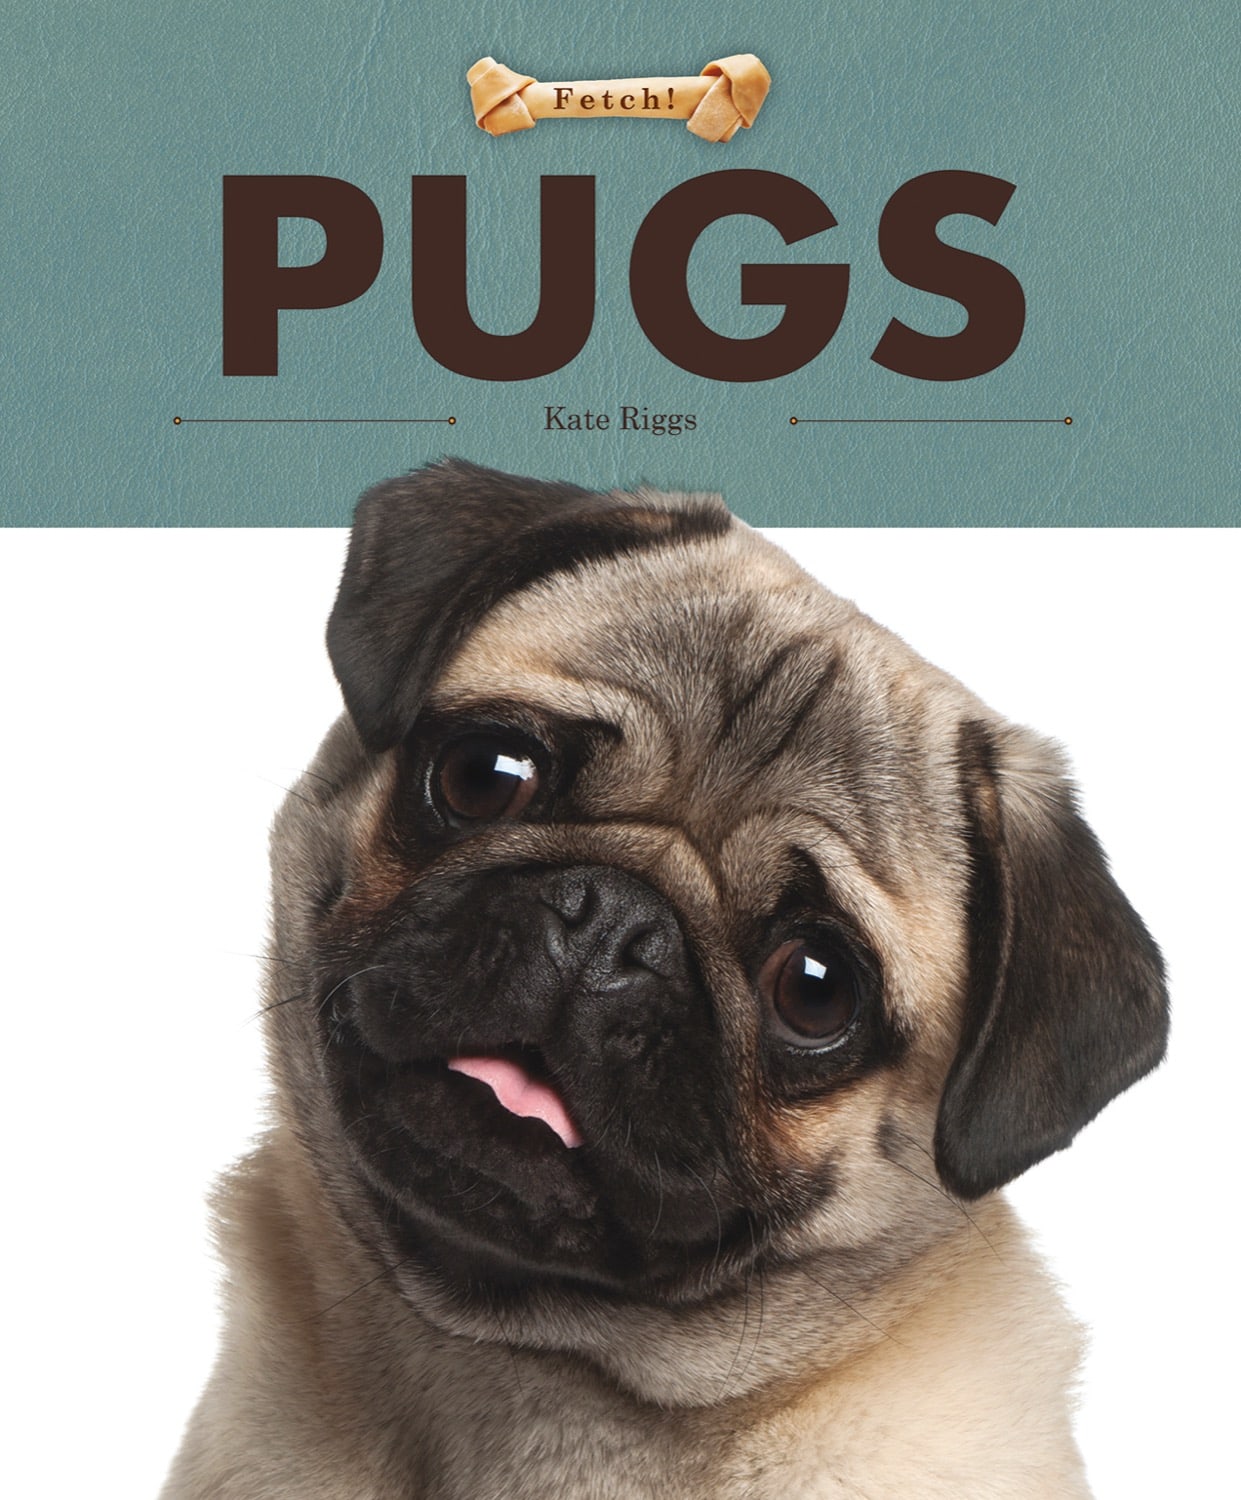 Fetch!: Pugs